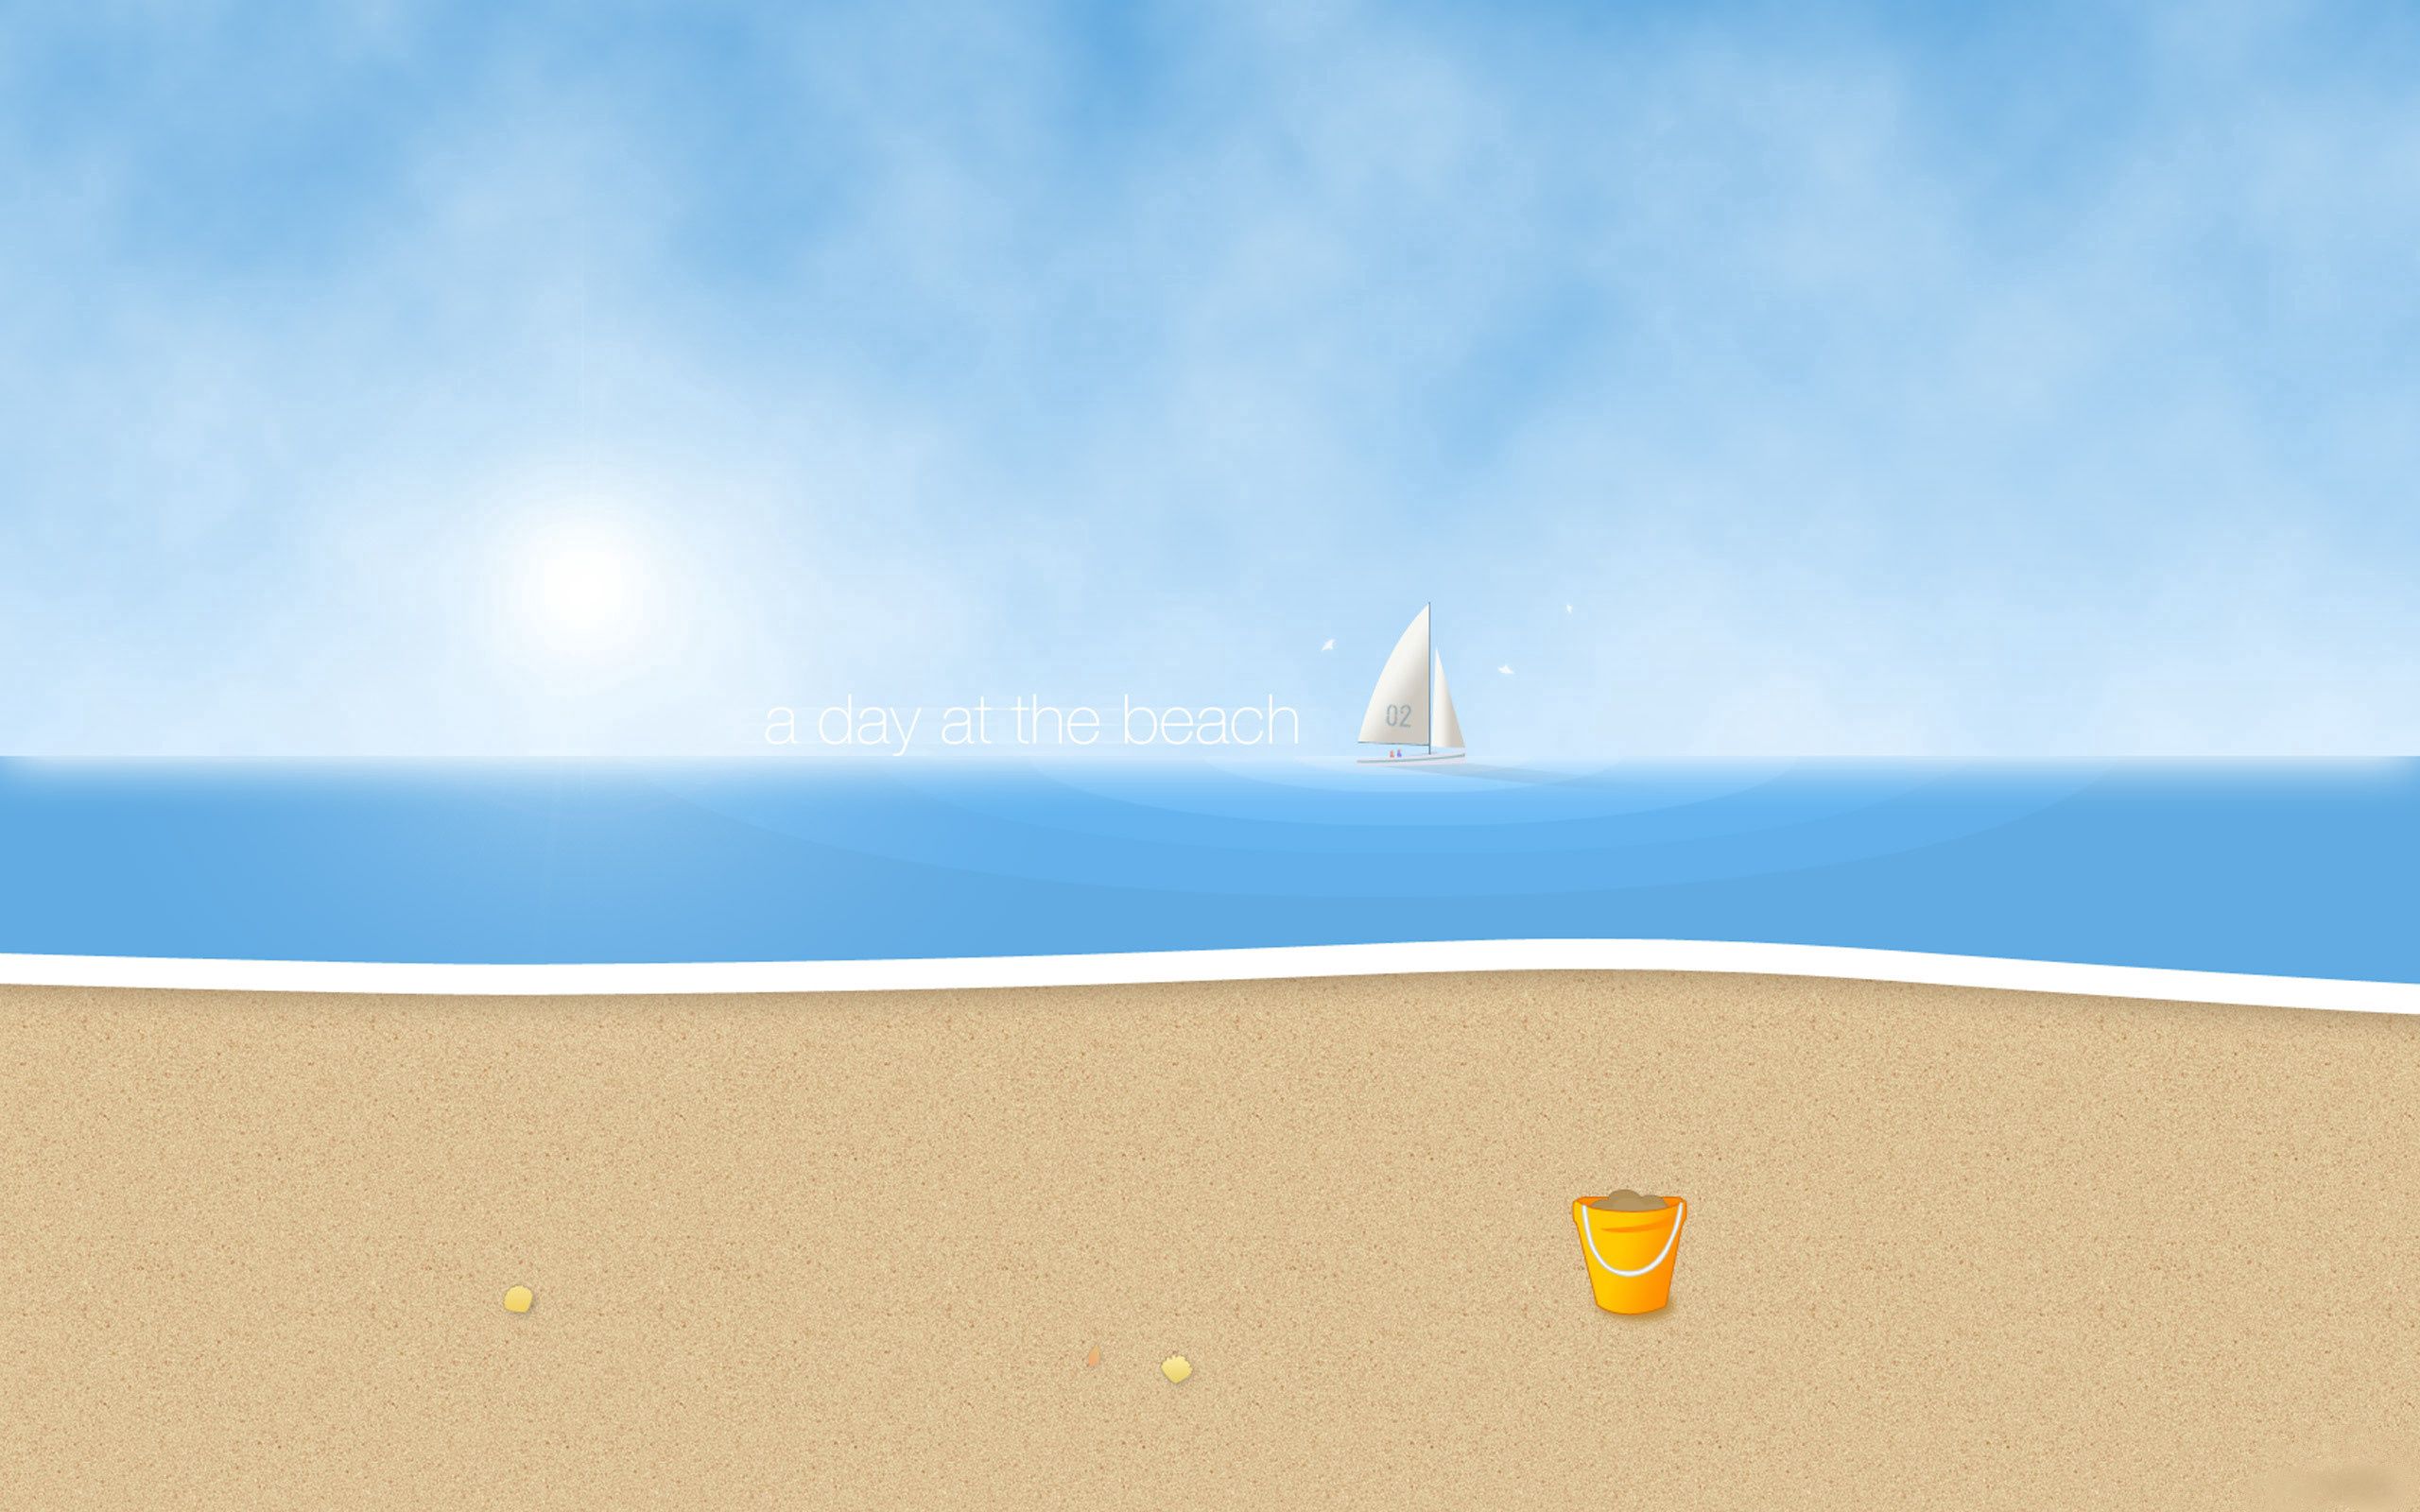 69803 скачать обои парусник, волны, солнце, пляж, песок, разное, один день на пляже - заставки и картинки бесплатно